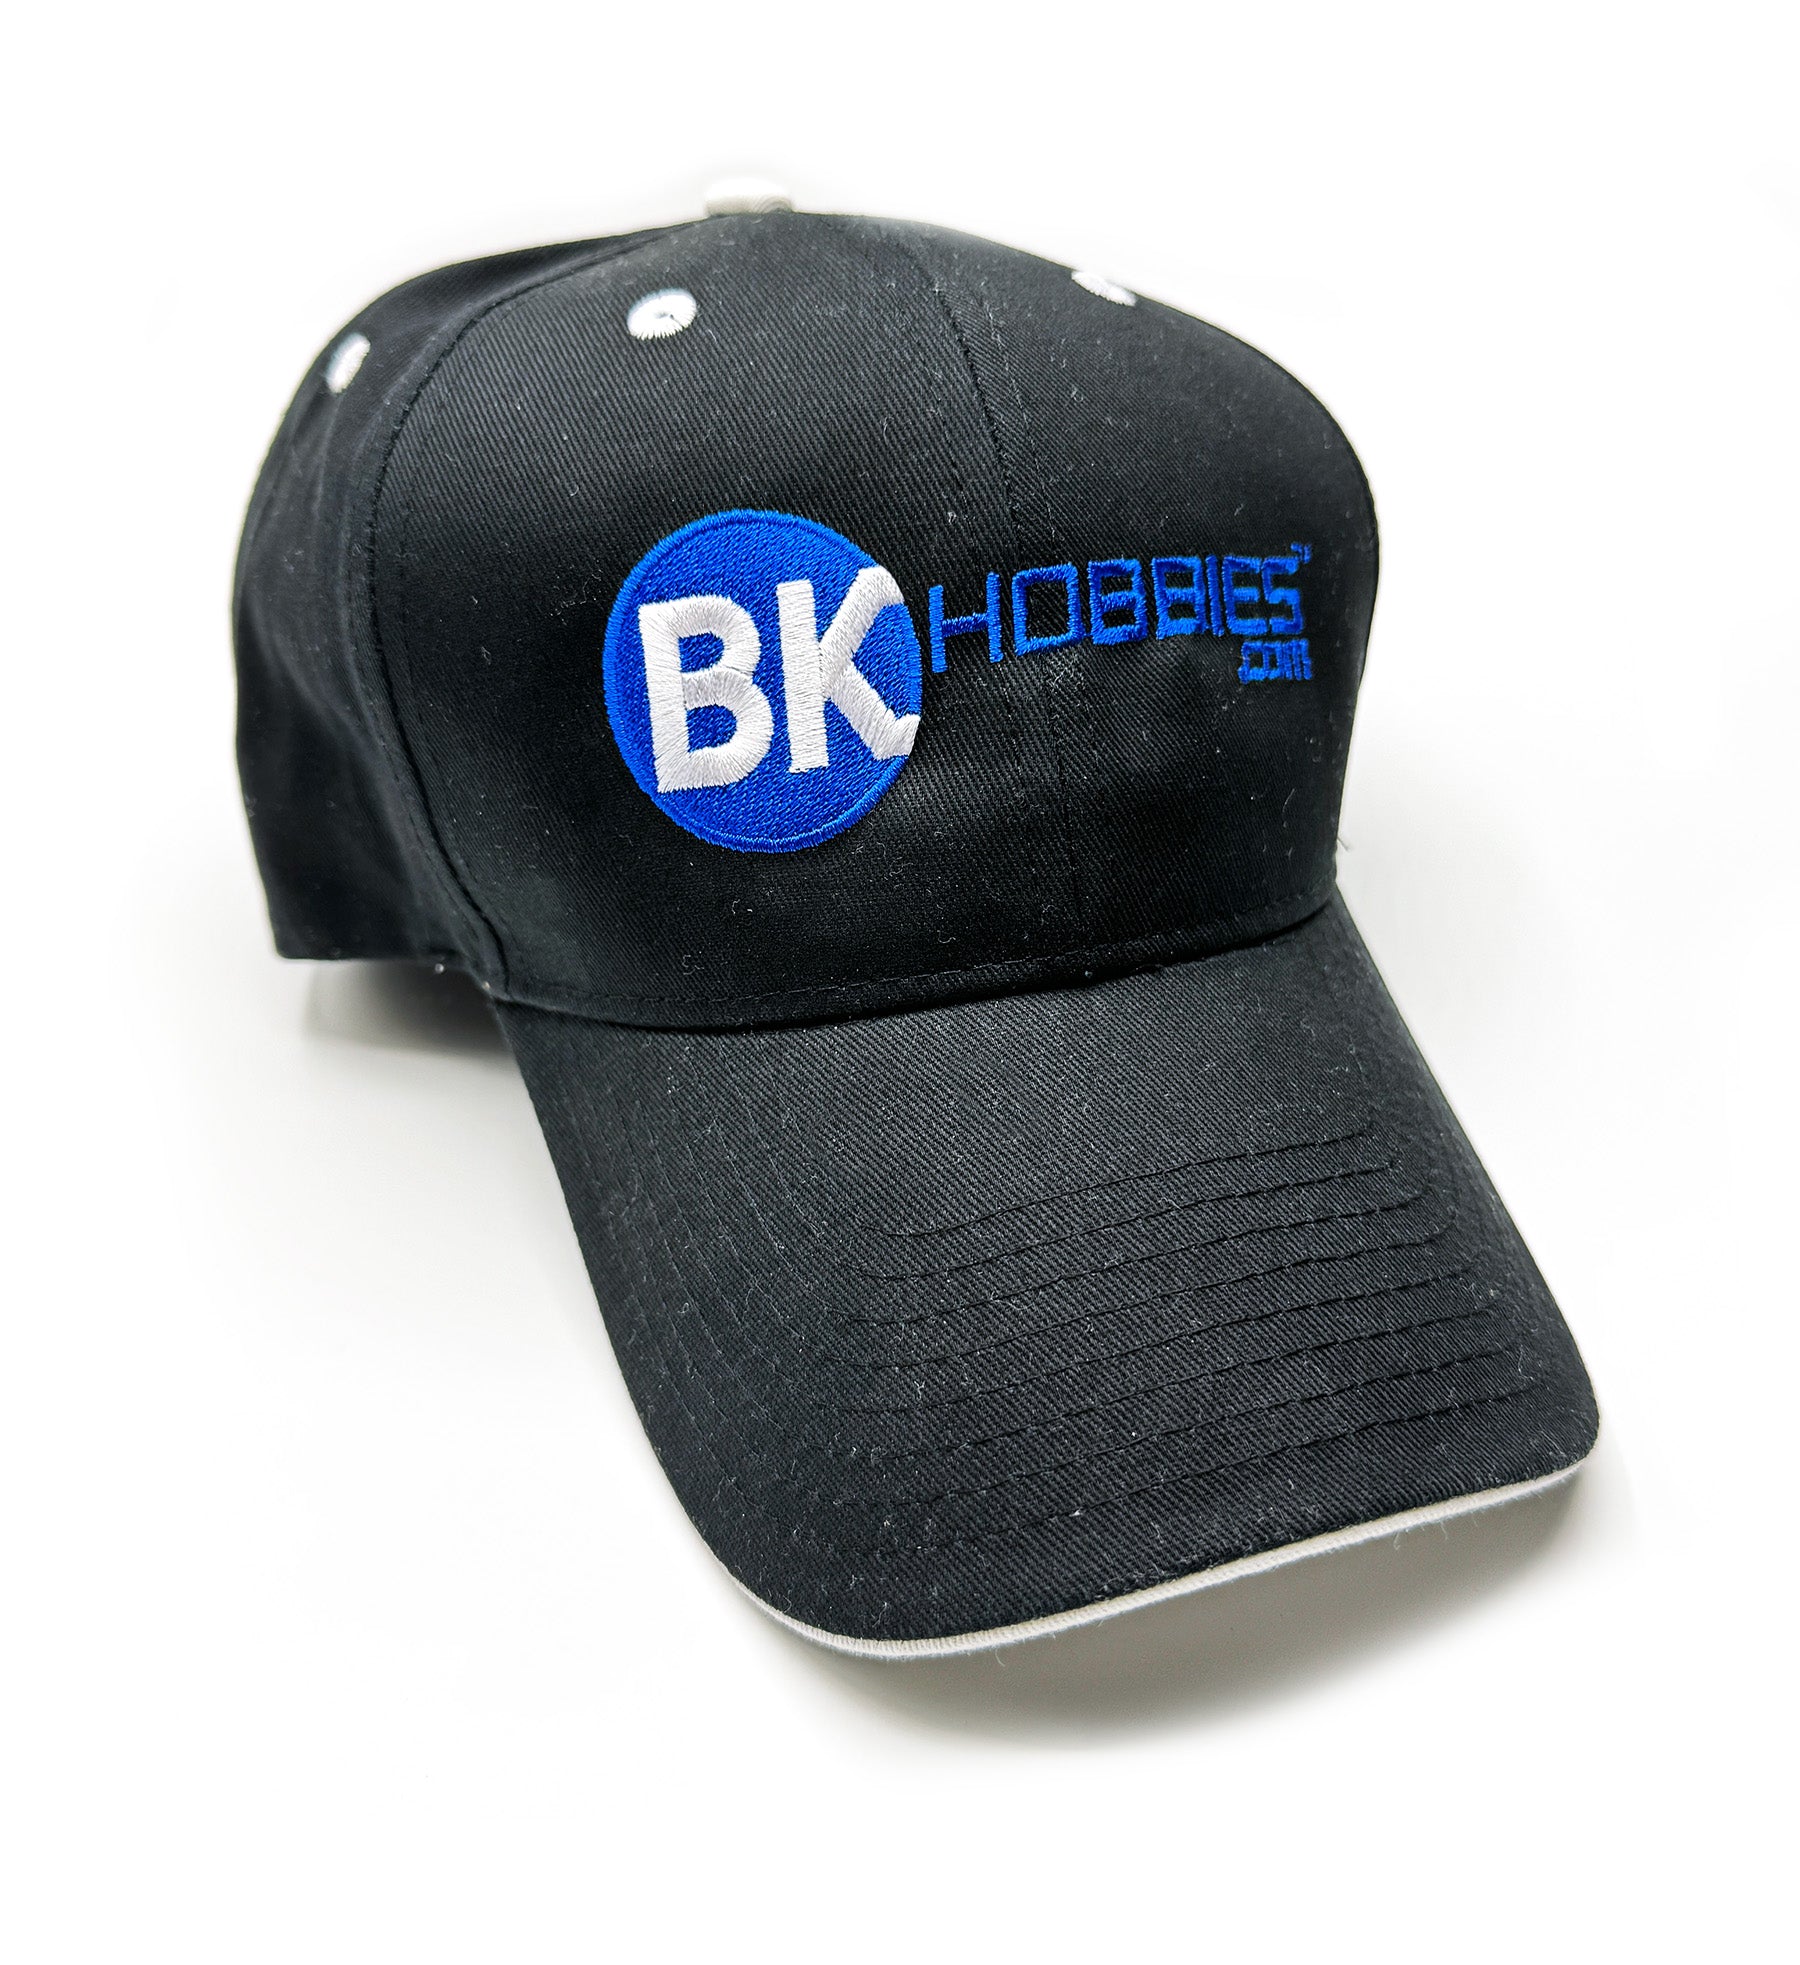 BK Hobbies Embroidered Hat (Black)